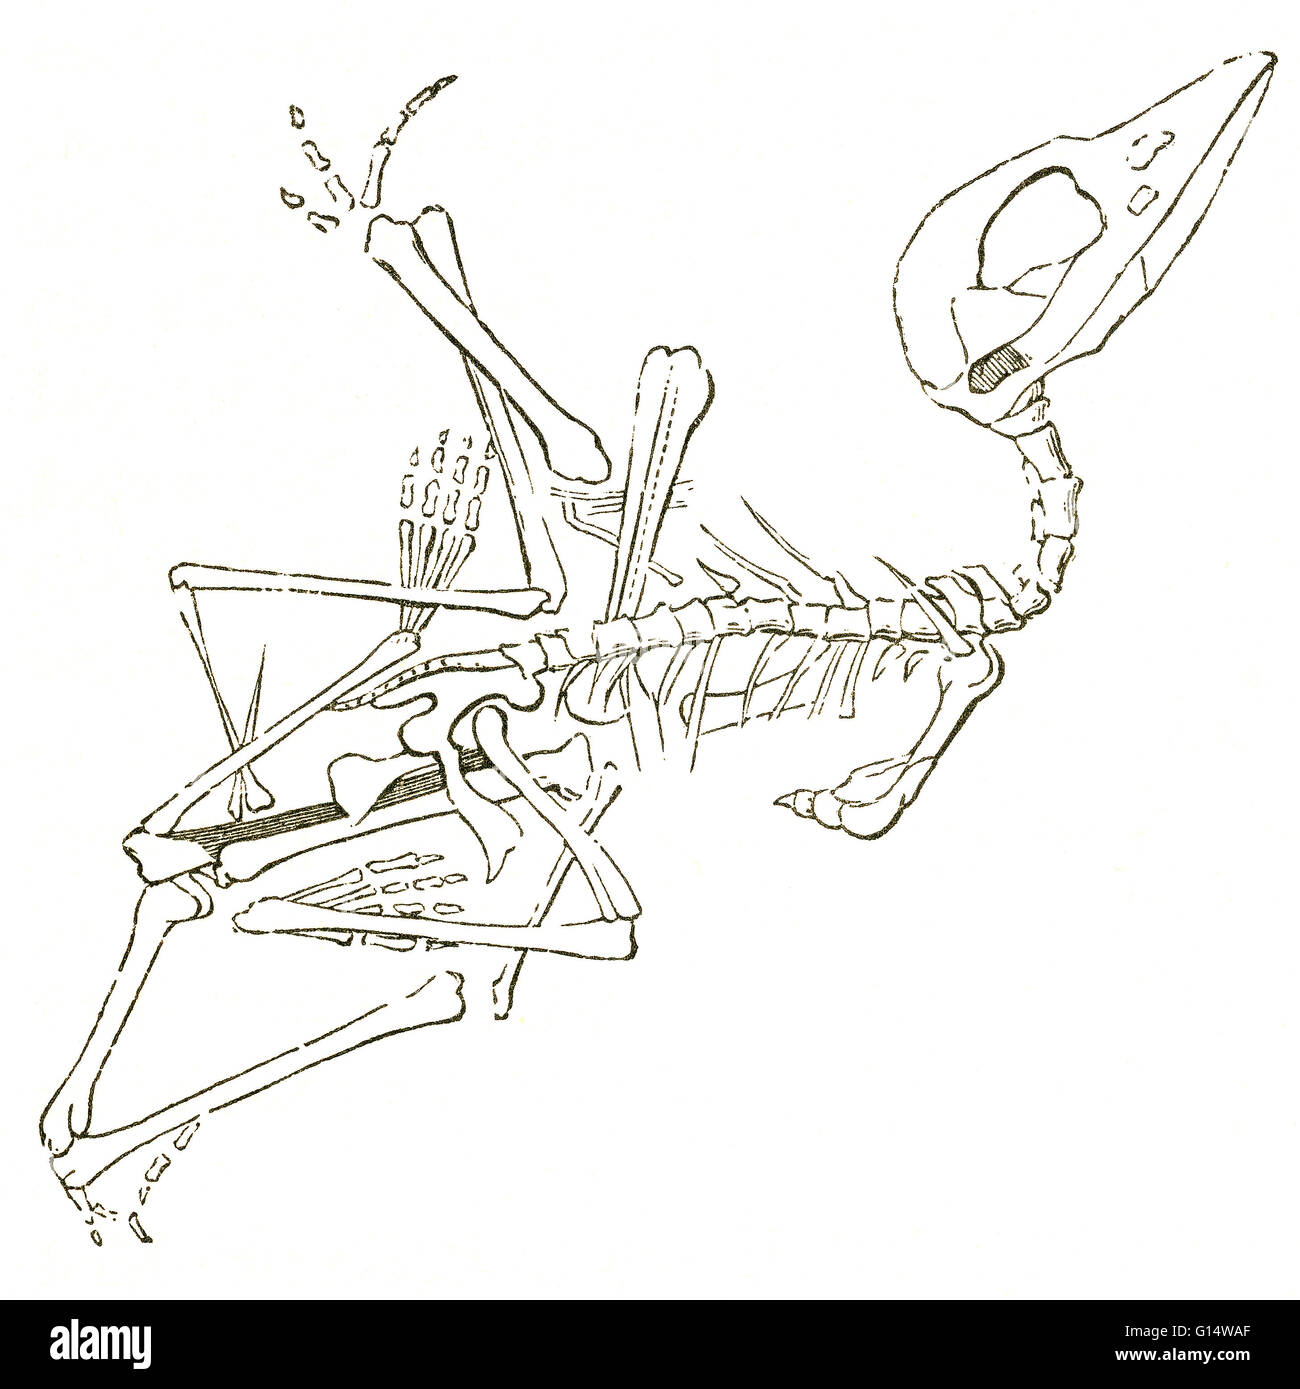 Illustrazione di un fossile pterodactyl (Pterodactylus brevirostris), da Louis Figuier il mondo prima del diluvio, 1867 edizione americana. Figuier descrive pterodactyls come "mezzo vampiro, semi-woodcock, coccodrillo con i denti." Questo è stato fossile discove Foto Stock